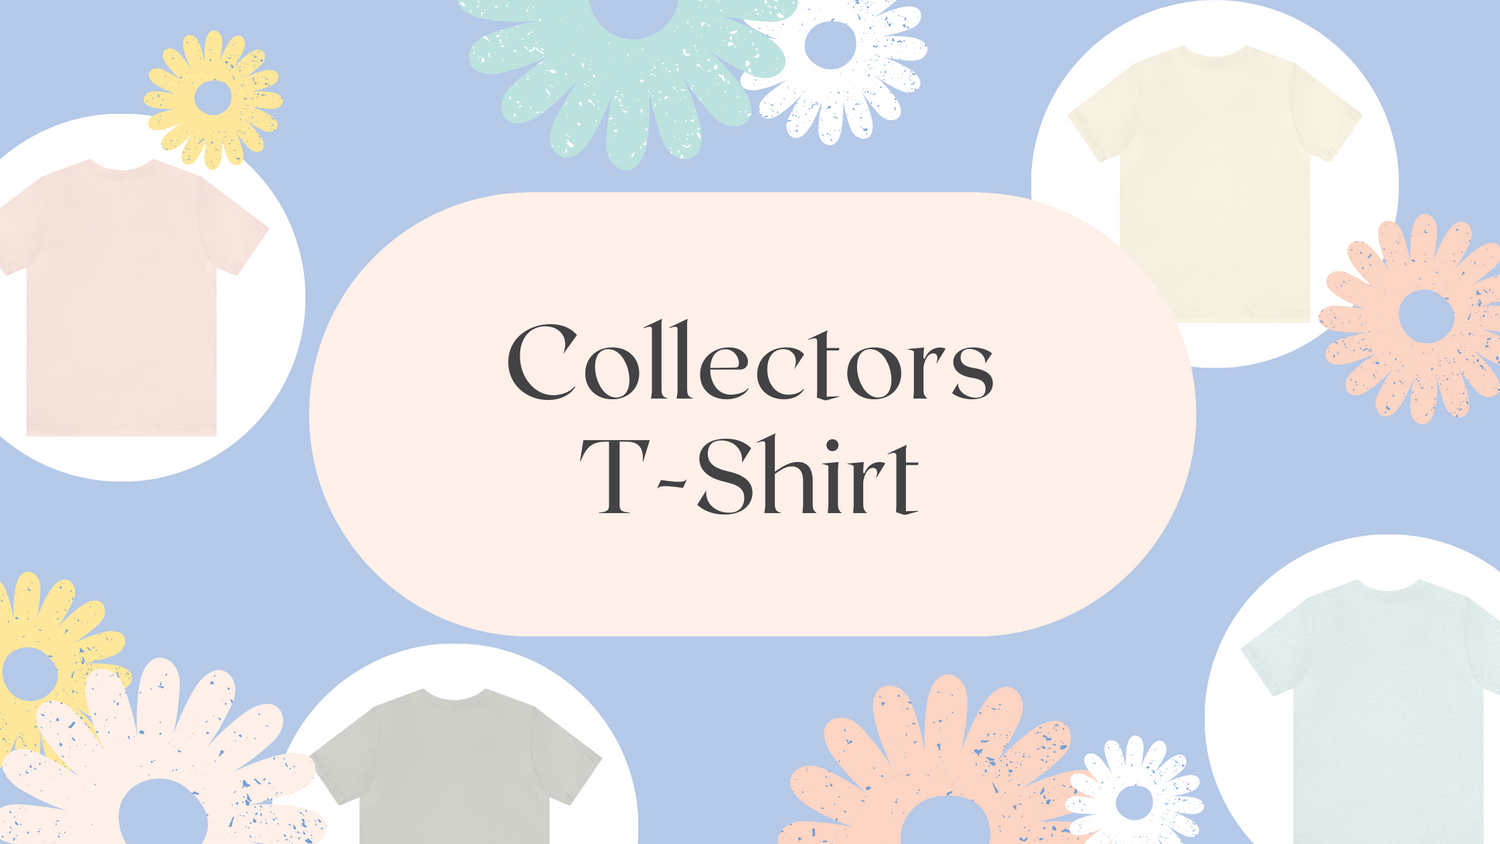 Collectors T-shirts